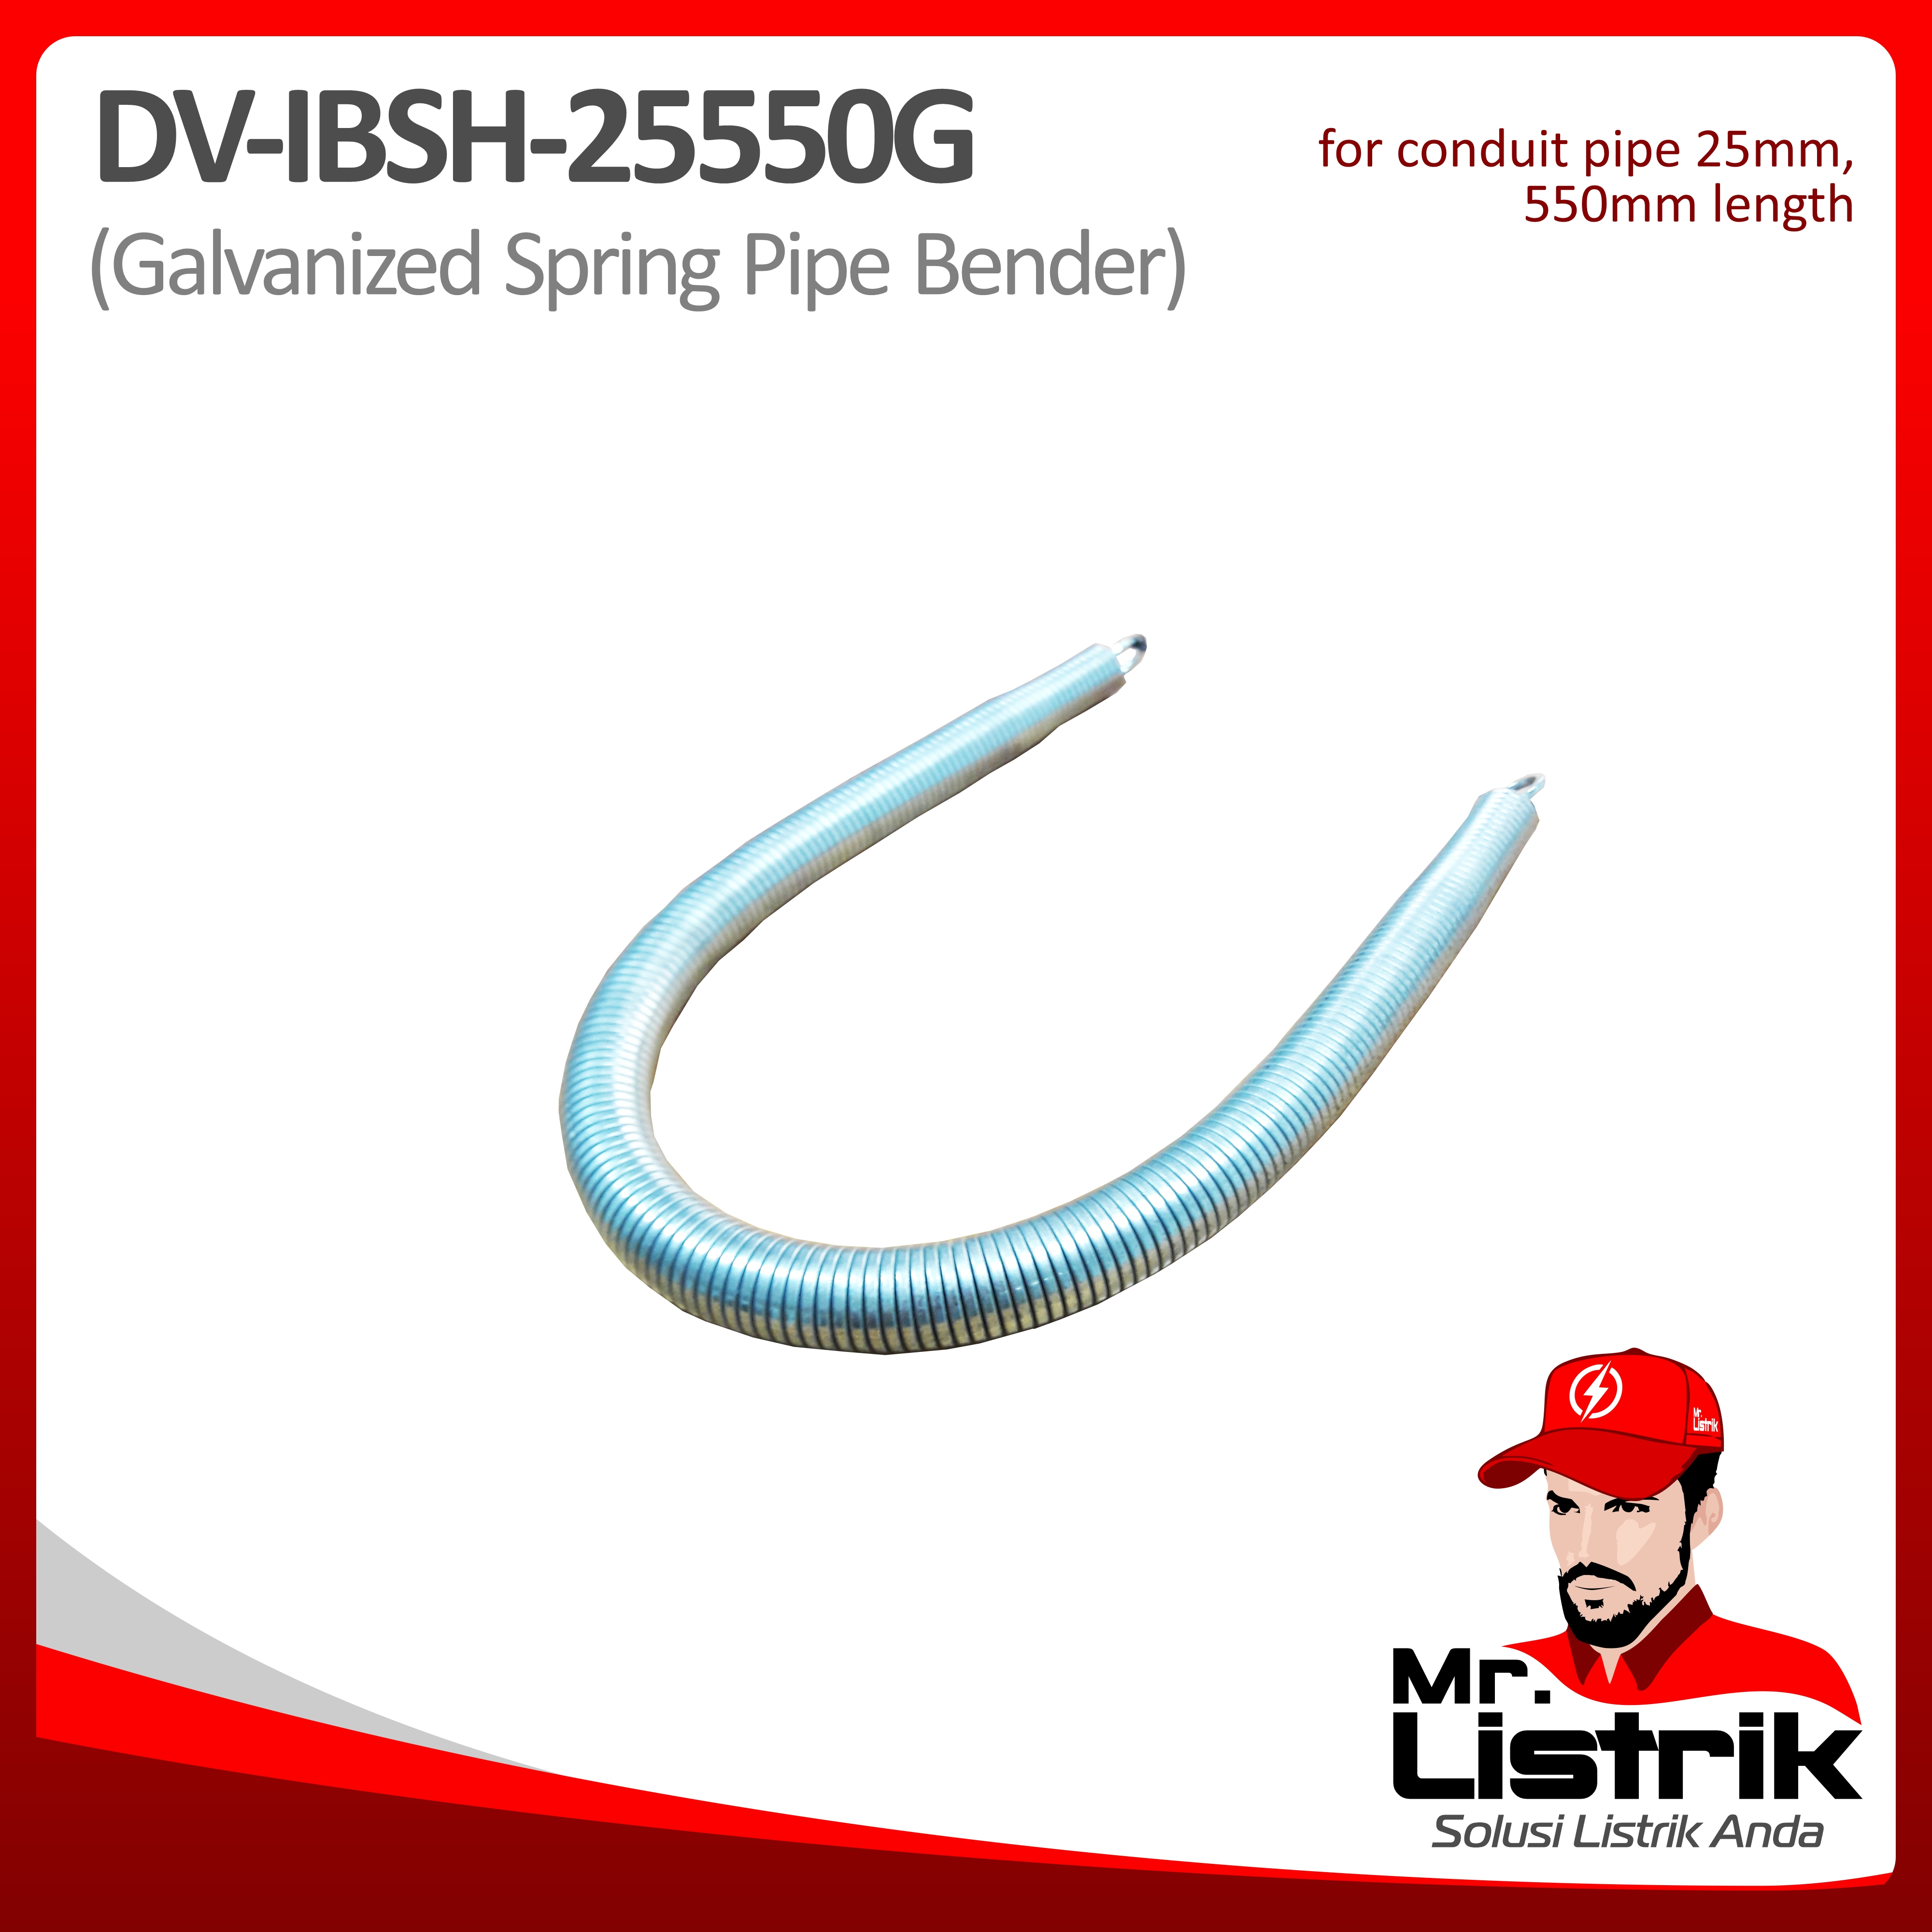 Bending Pipa 25mm DV IBSH-25550G